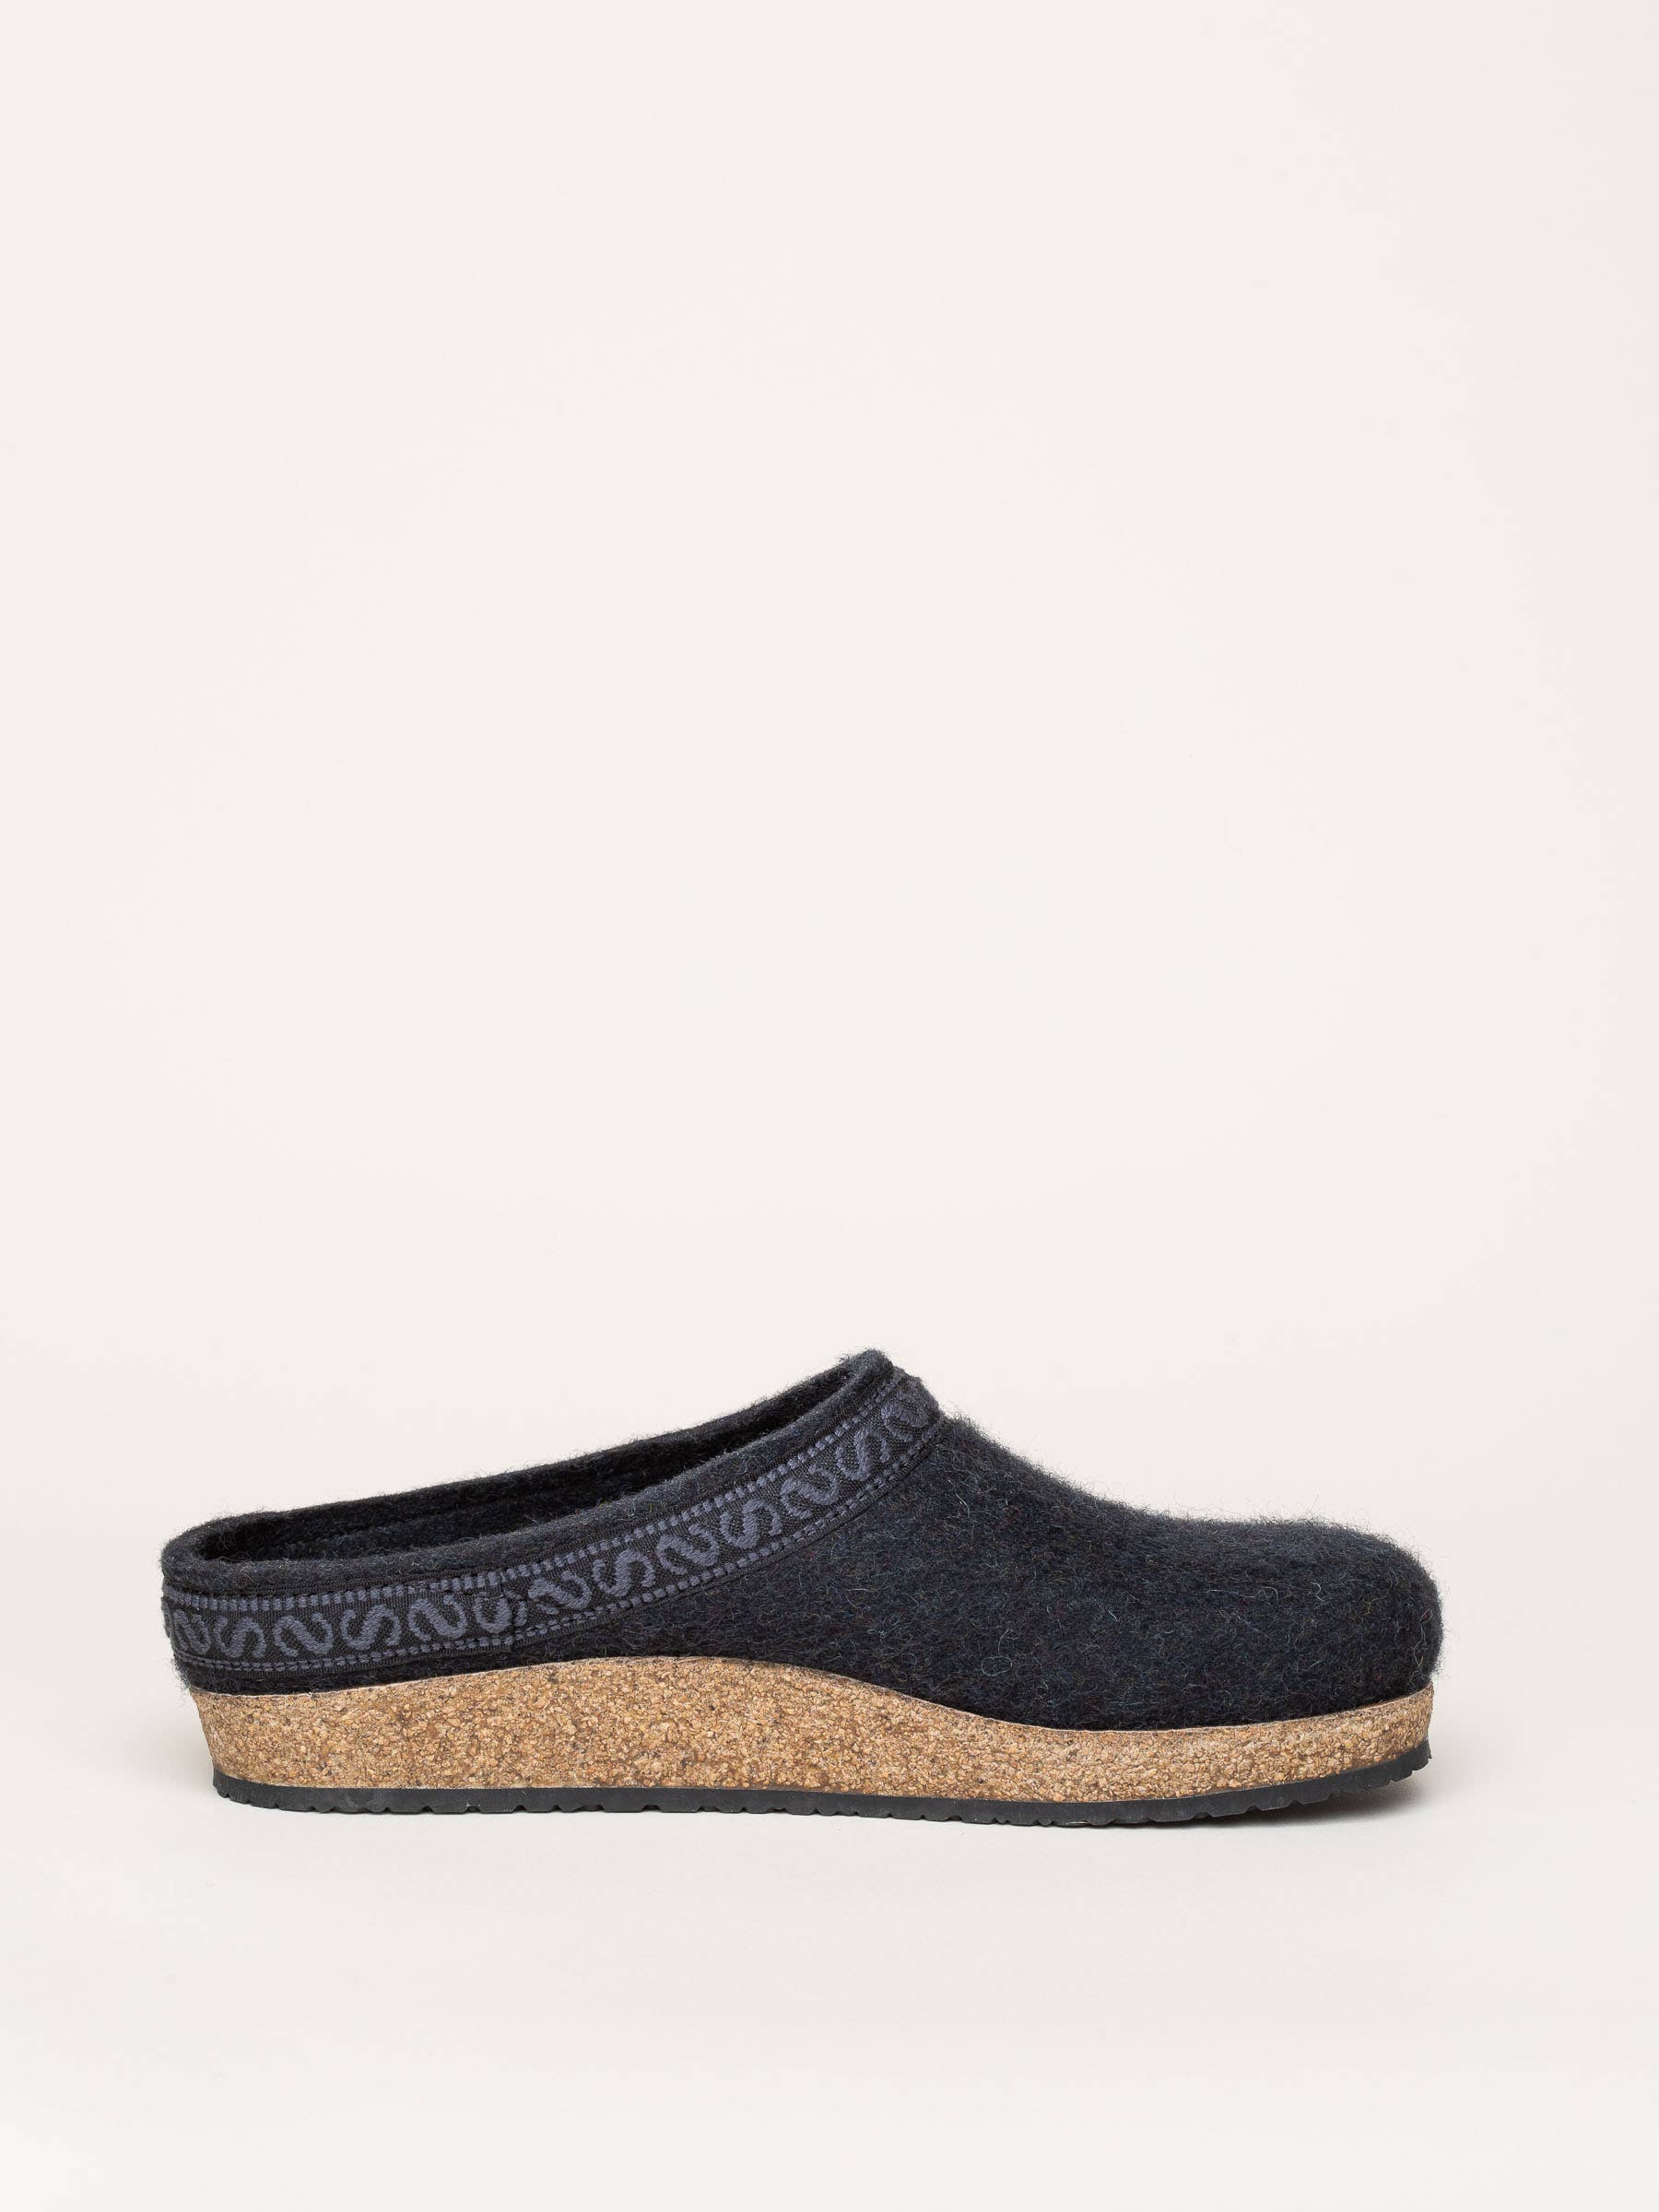 Felt slippers by GOTTSTEIN: Online Shop for natural slippers